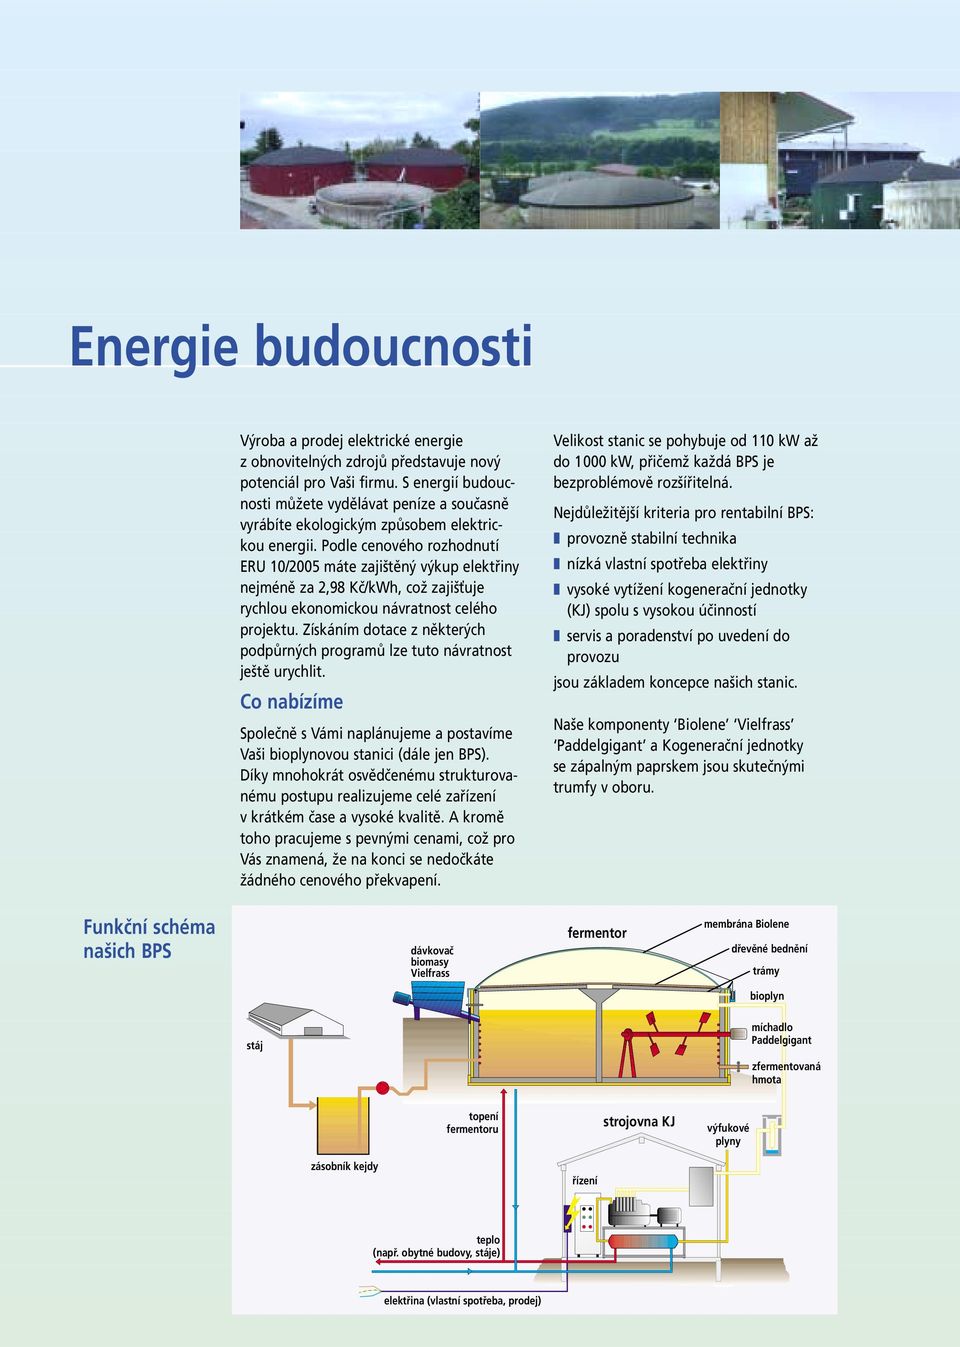 Podle cenového rozhodnutí ERU 10/2005 máte zajištěný výkup elektřiny nejméně za 2,98 Kč/kWh, což zajišťuje rychlou ekonomickou návratnost celého projektu.